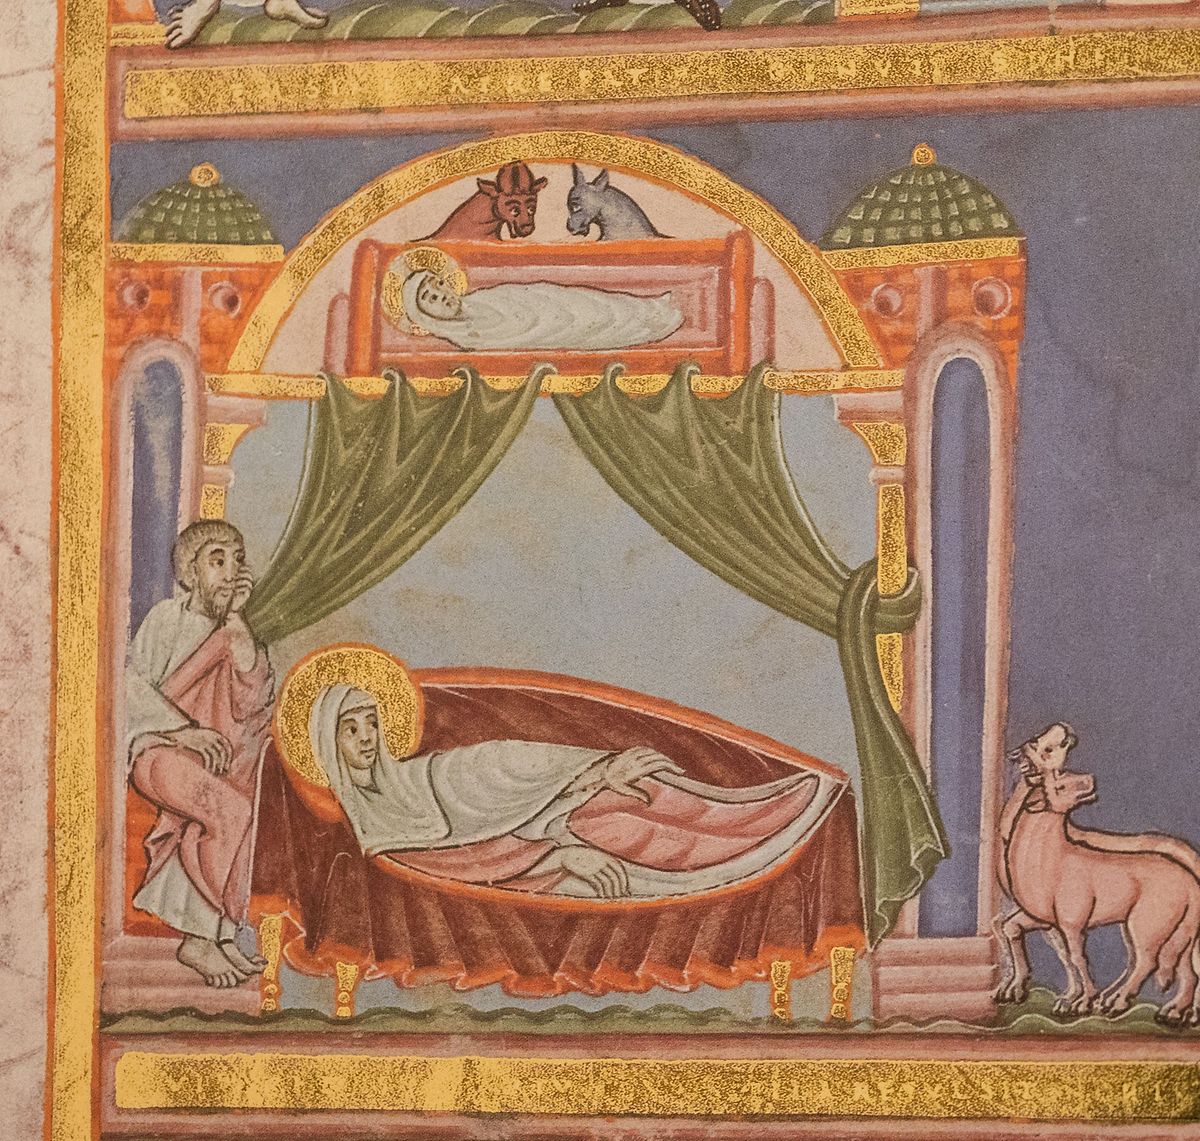 Die Geburt Christi als prachtvolle mittelalterliche Handschrift.